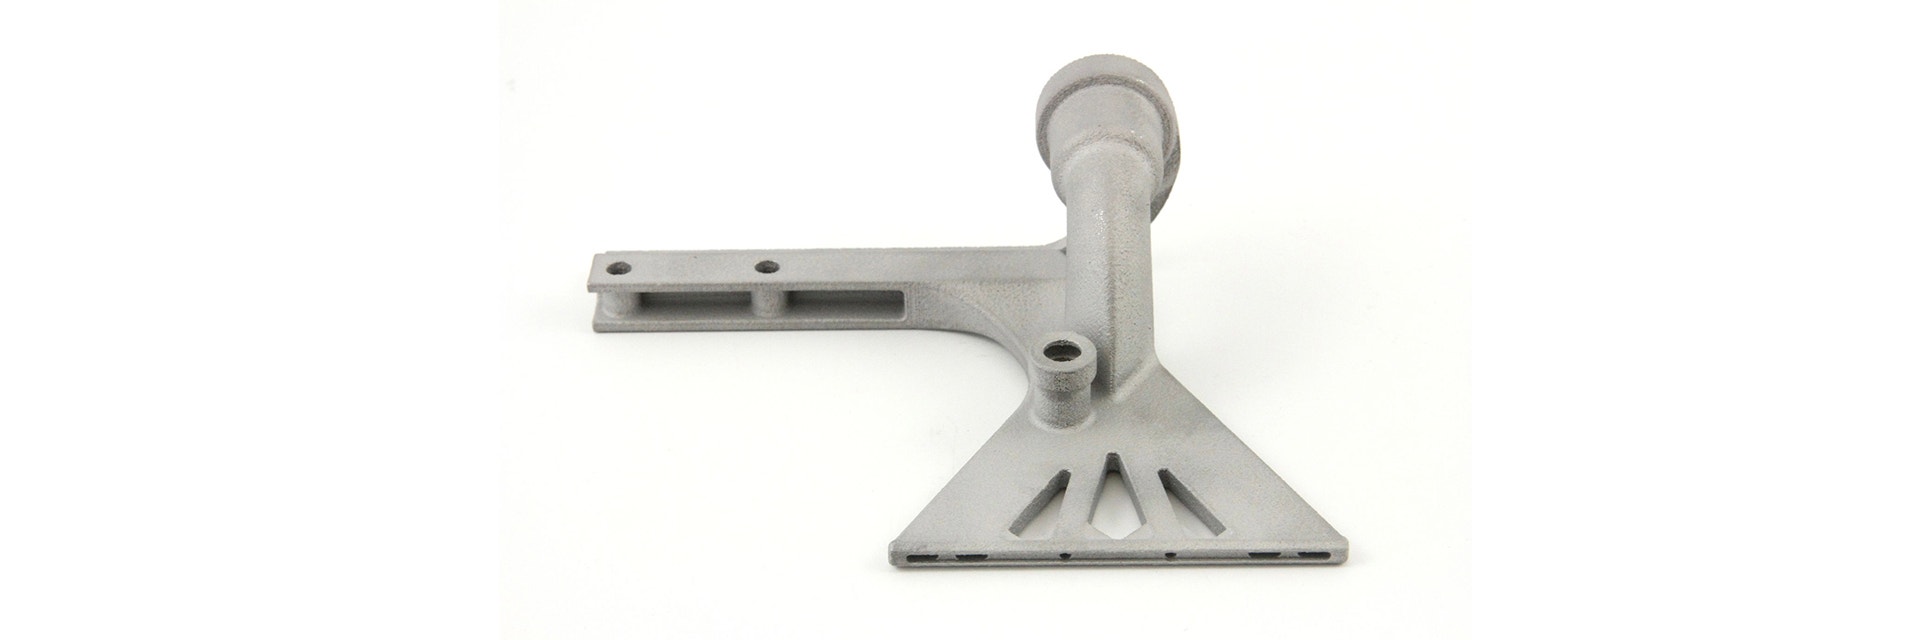 Ventouse en aluminium imprimée en 3D après optimisation de la conception